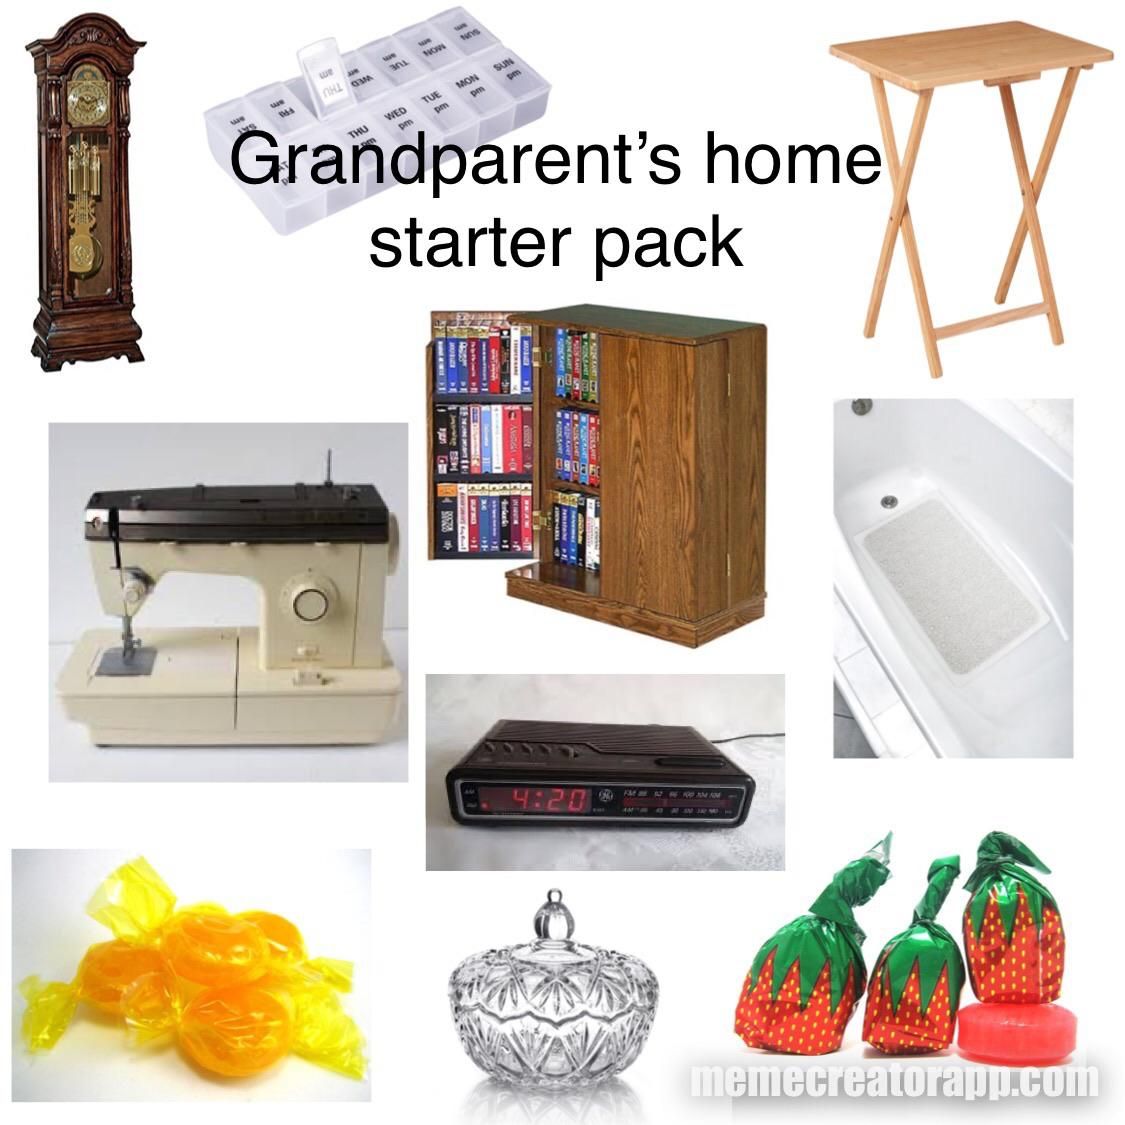 Grandparent’s home starter pack